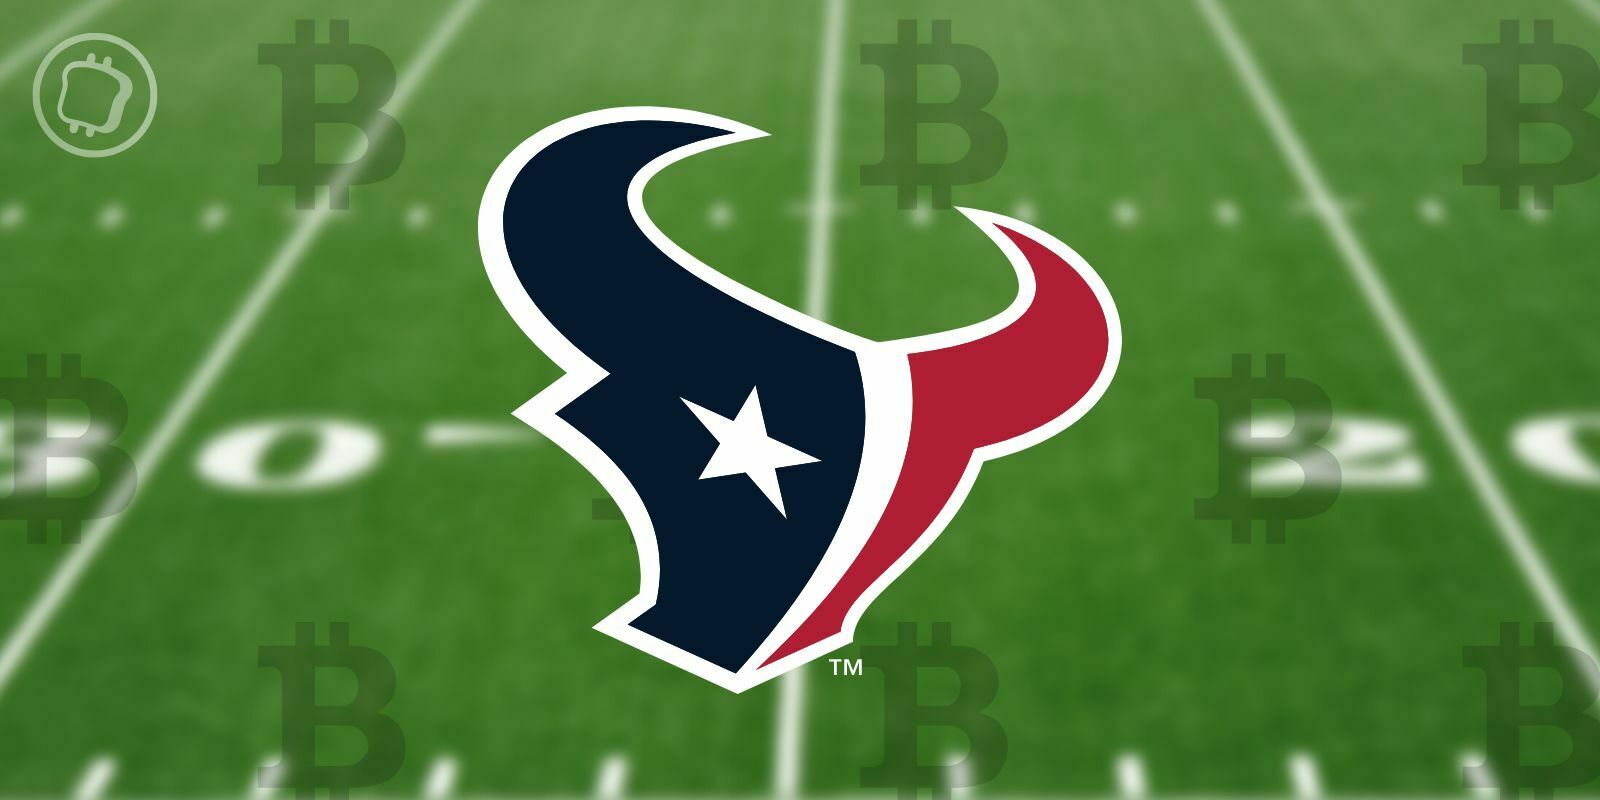 NFL et Bitcoin (BTC) : l'équipe des Houston Texans permet la réservation de loges en cryptomonnaies